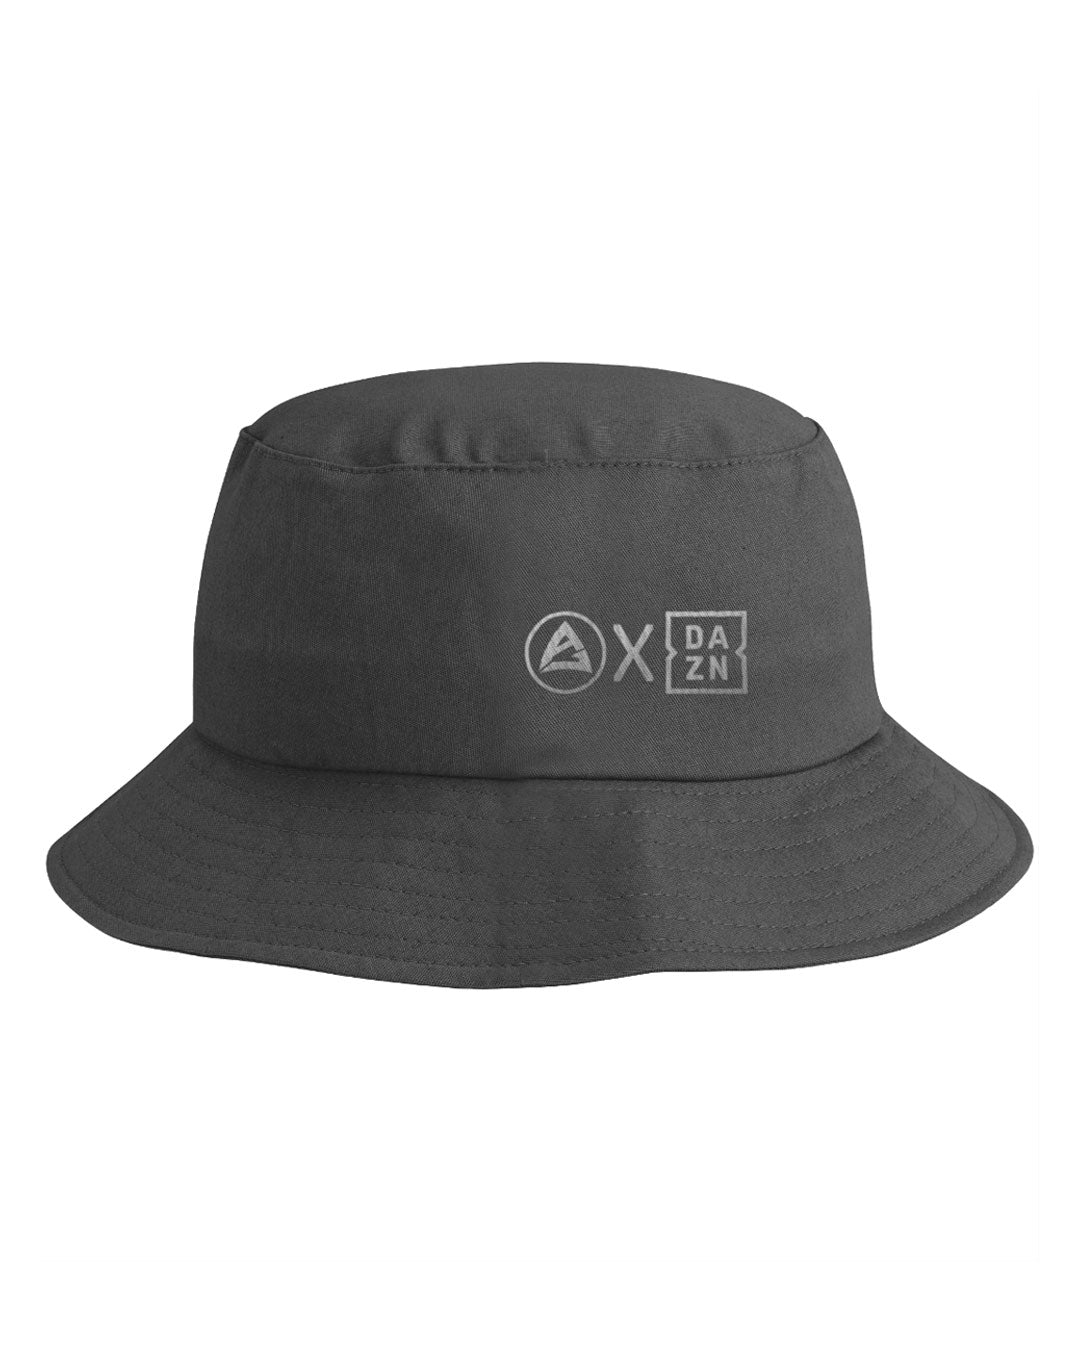 AJ X DAZN Bucket Cap